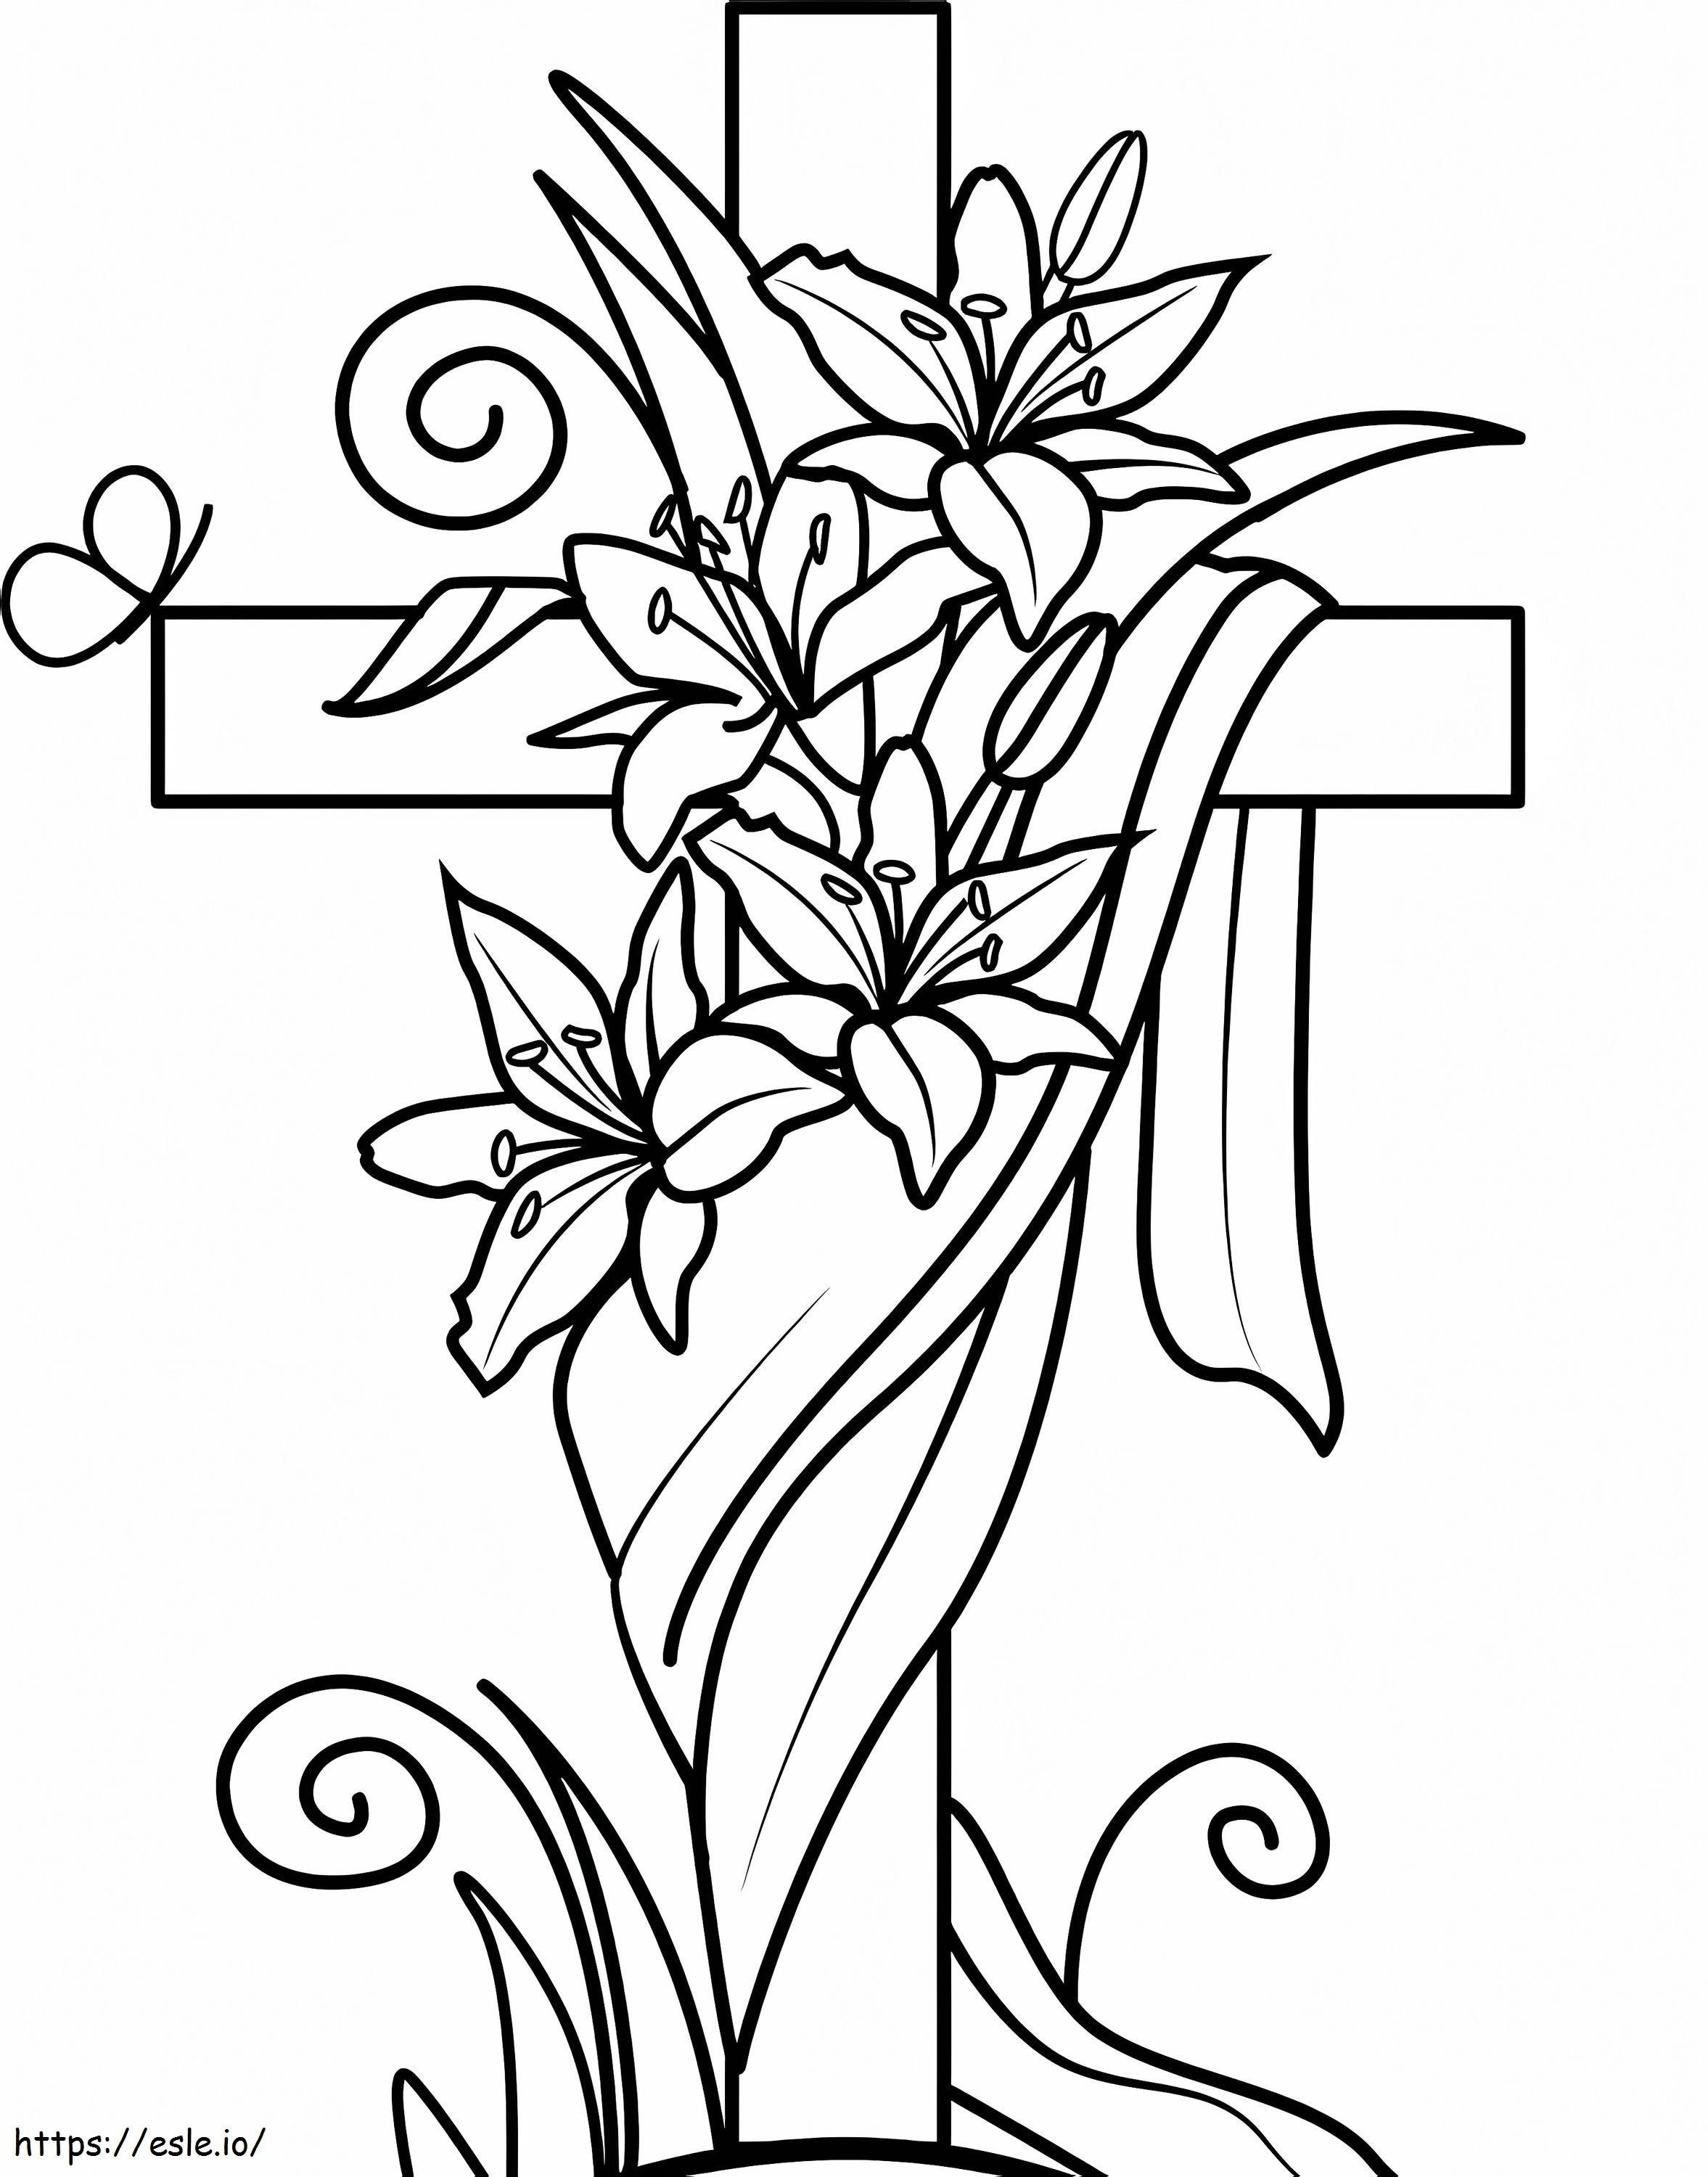 Osterkreuz und Lilien ausmalbilder